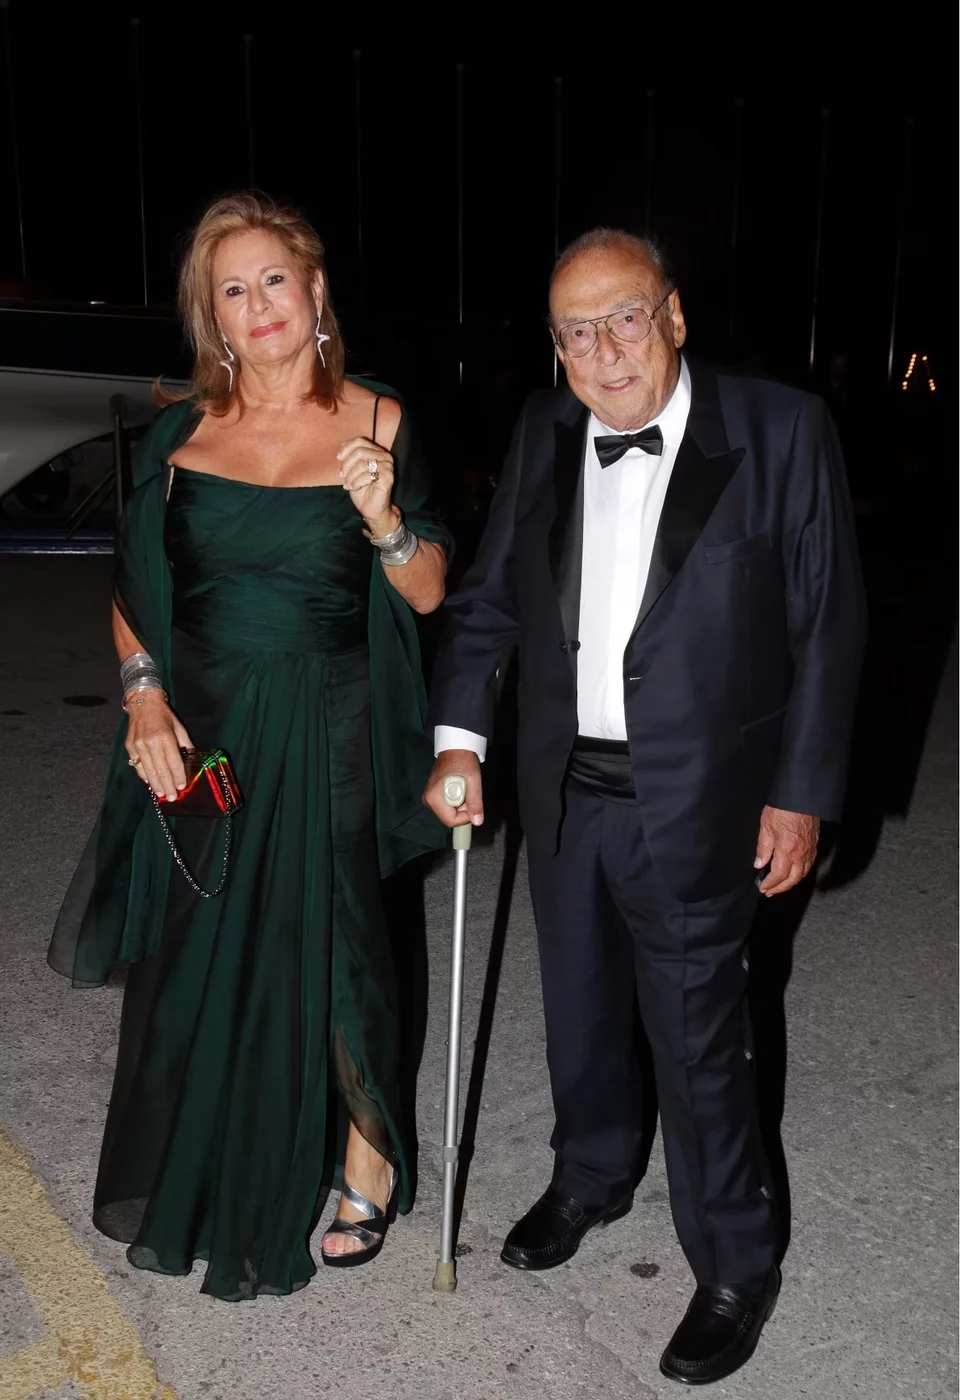 Ο Κάρολος Φιξ (έφυγε από τη ζωή το 2019) με την τελευταία σύζυγό του Νινέτα Φιξ, η οποία πέτυχε το χρυσό deal